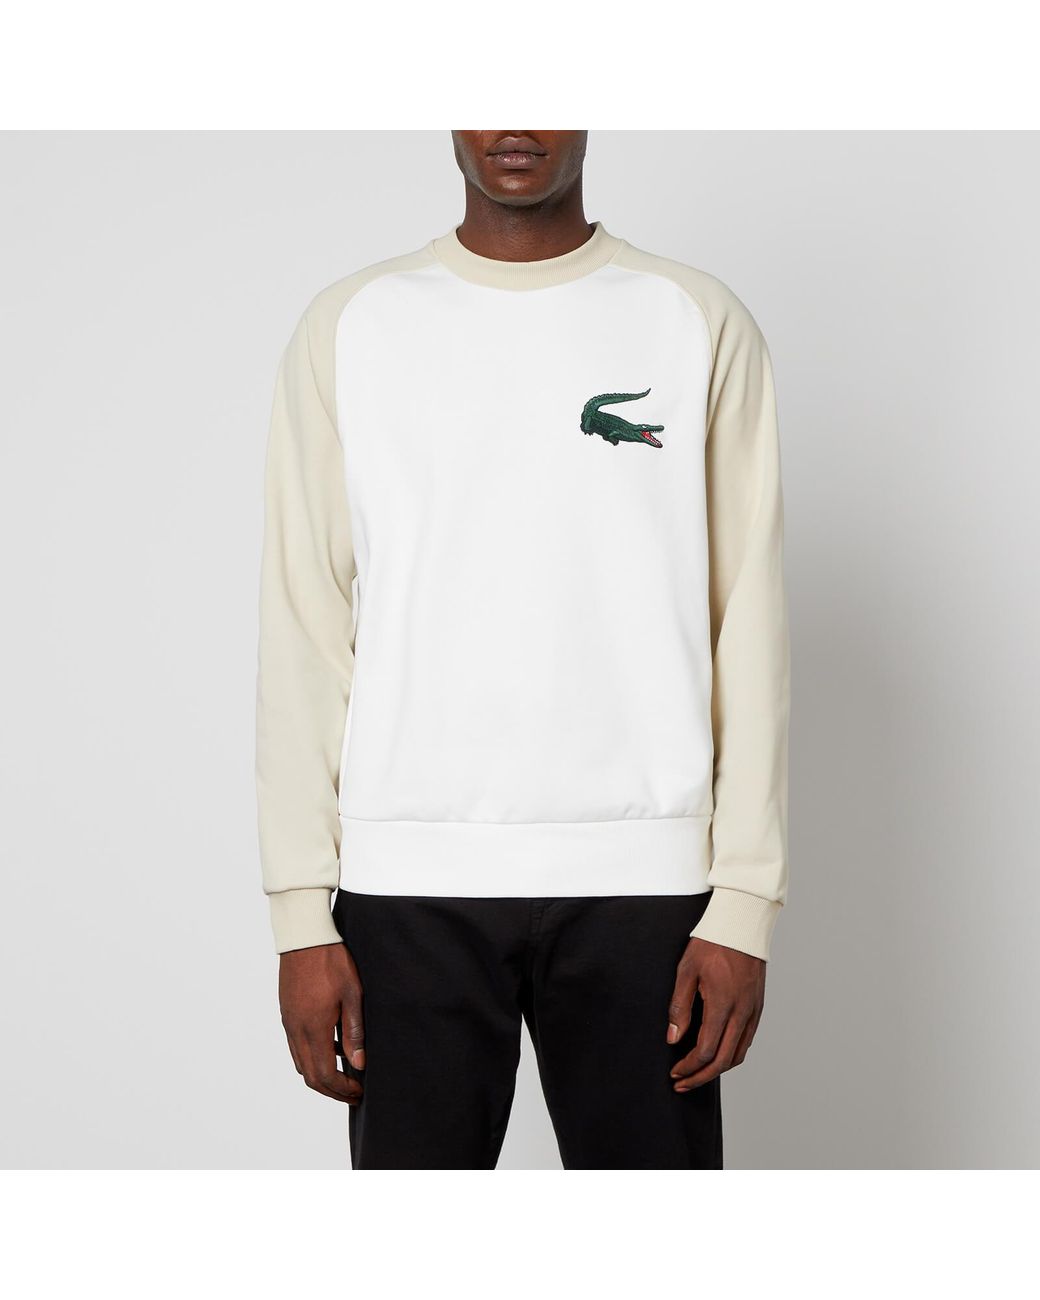 Lacoste Robert Georges Croc Sweatshirt in Natural for Men | Lyst